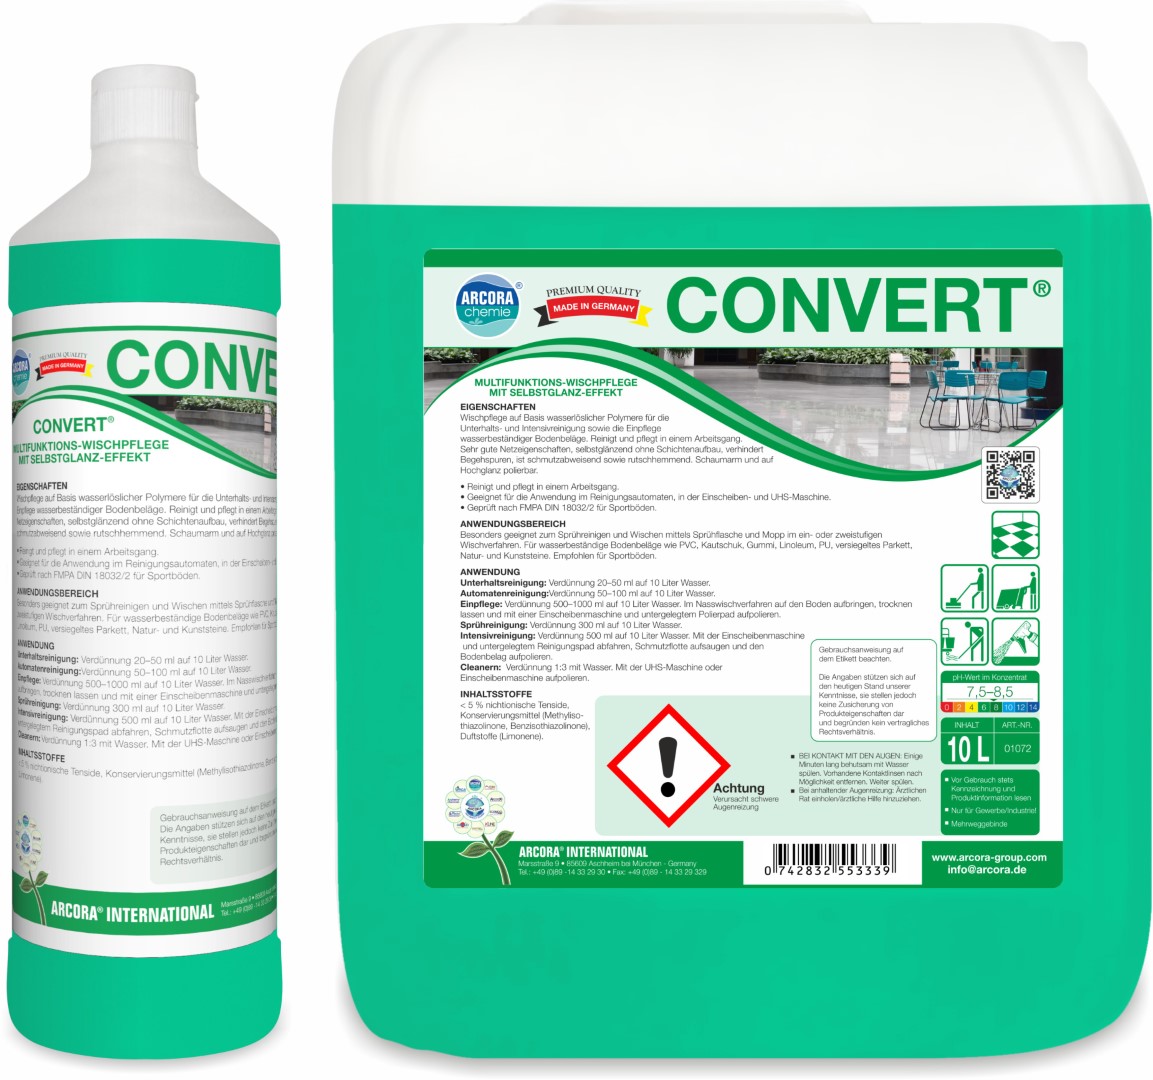  Convert | Wischpflege & Bodenreiniger  | 10 Liter Kanister 